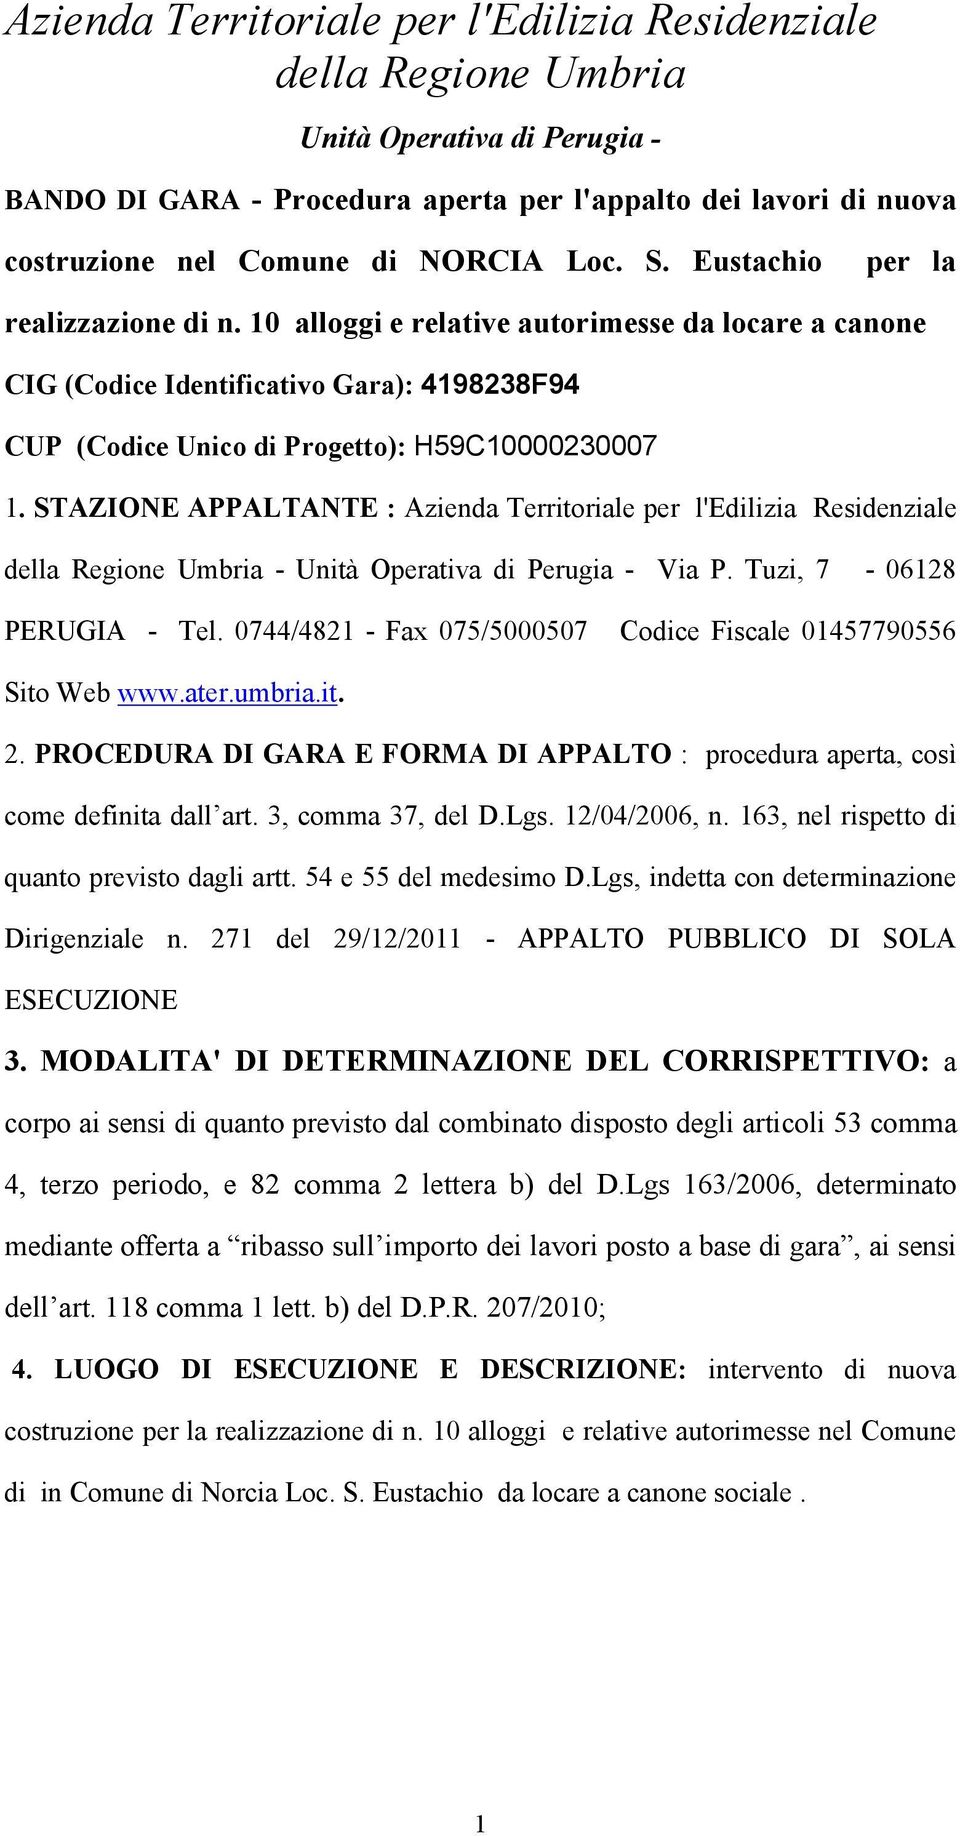 STAZIONE APPALTANTE : Azienda Territoriale per l'edilizia Residenziale della Regione Umbria - Unità Operativa di Perugia - Via P. Tuzi, 7-06128 PERUGIA - Tel.